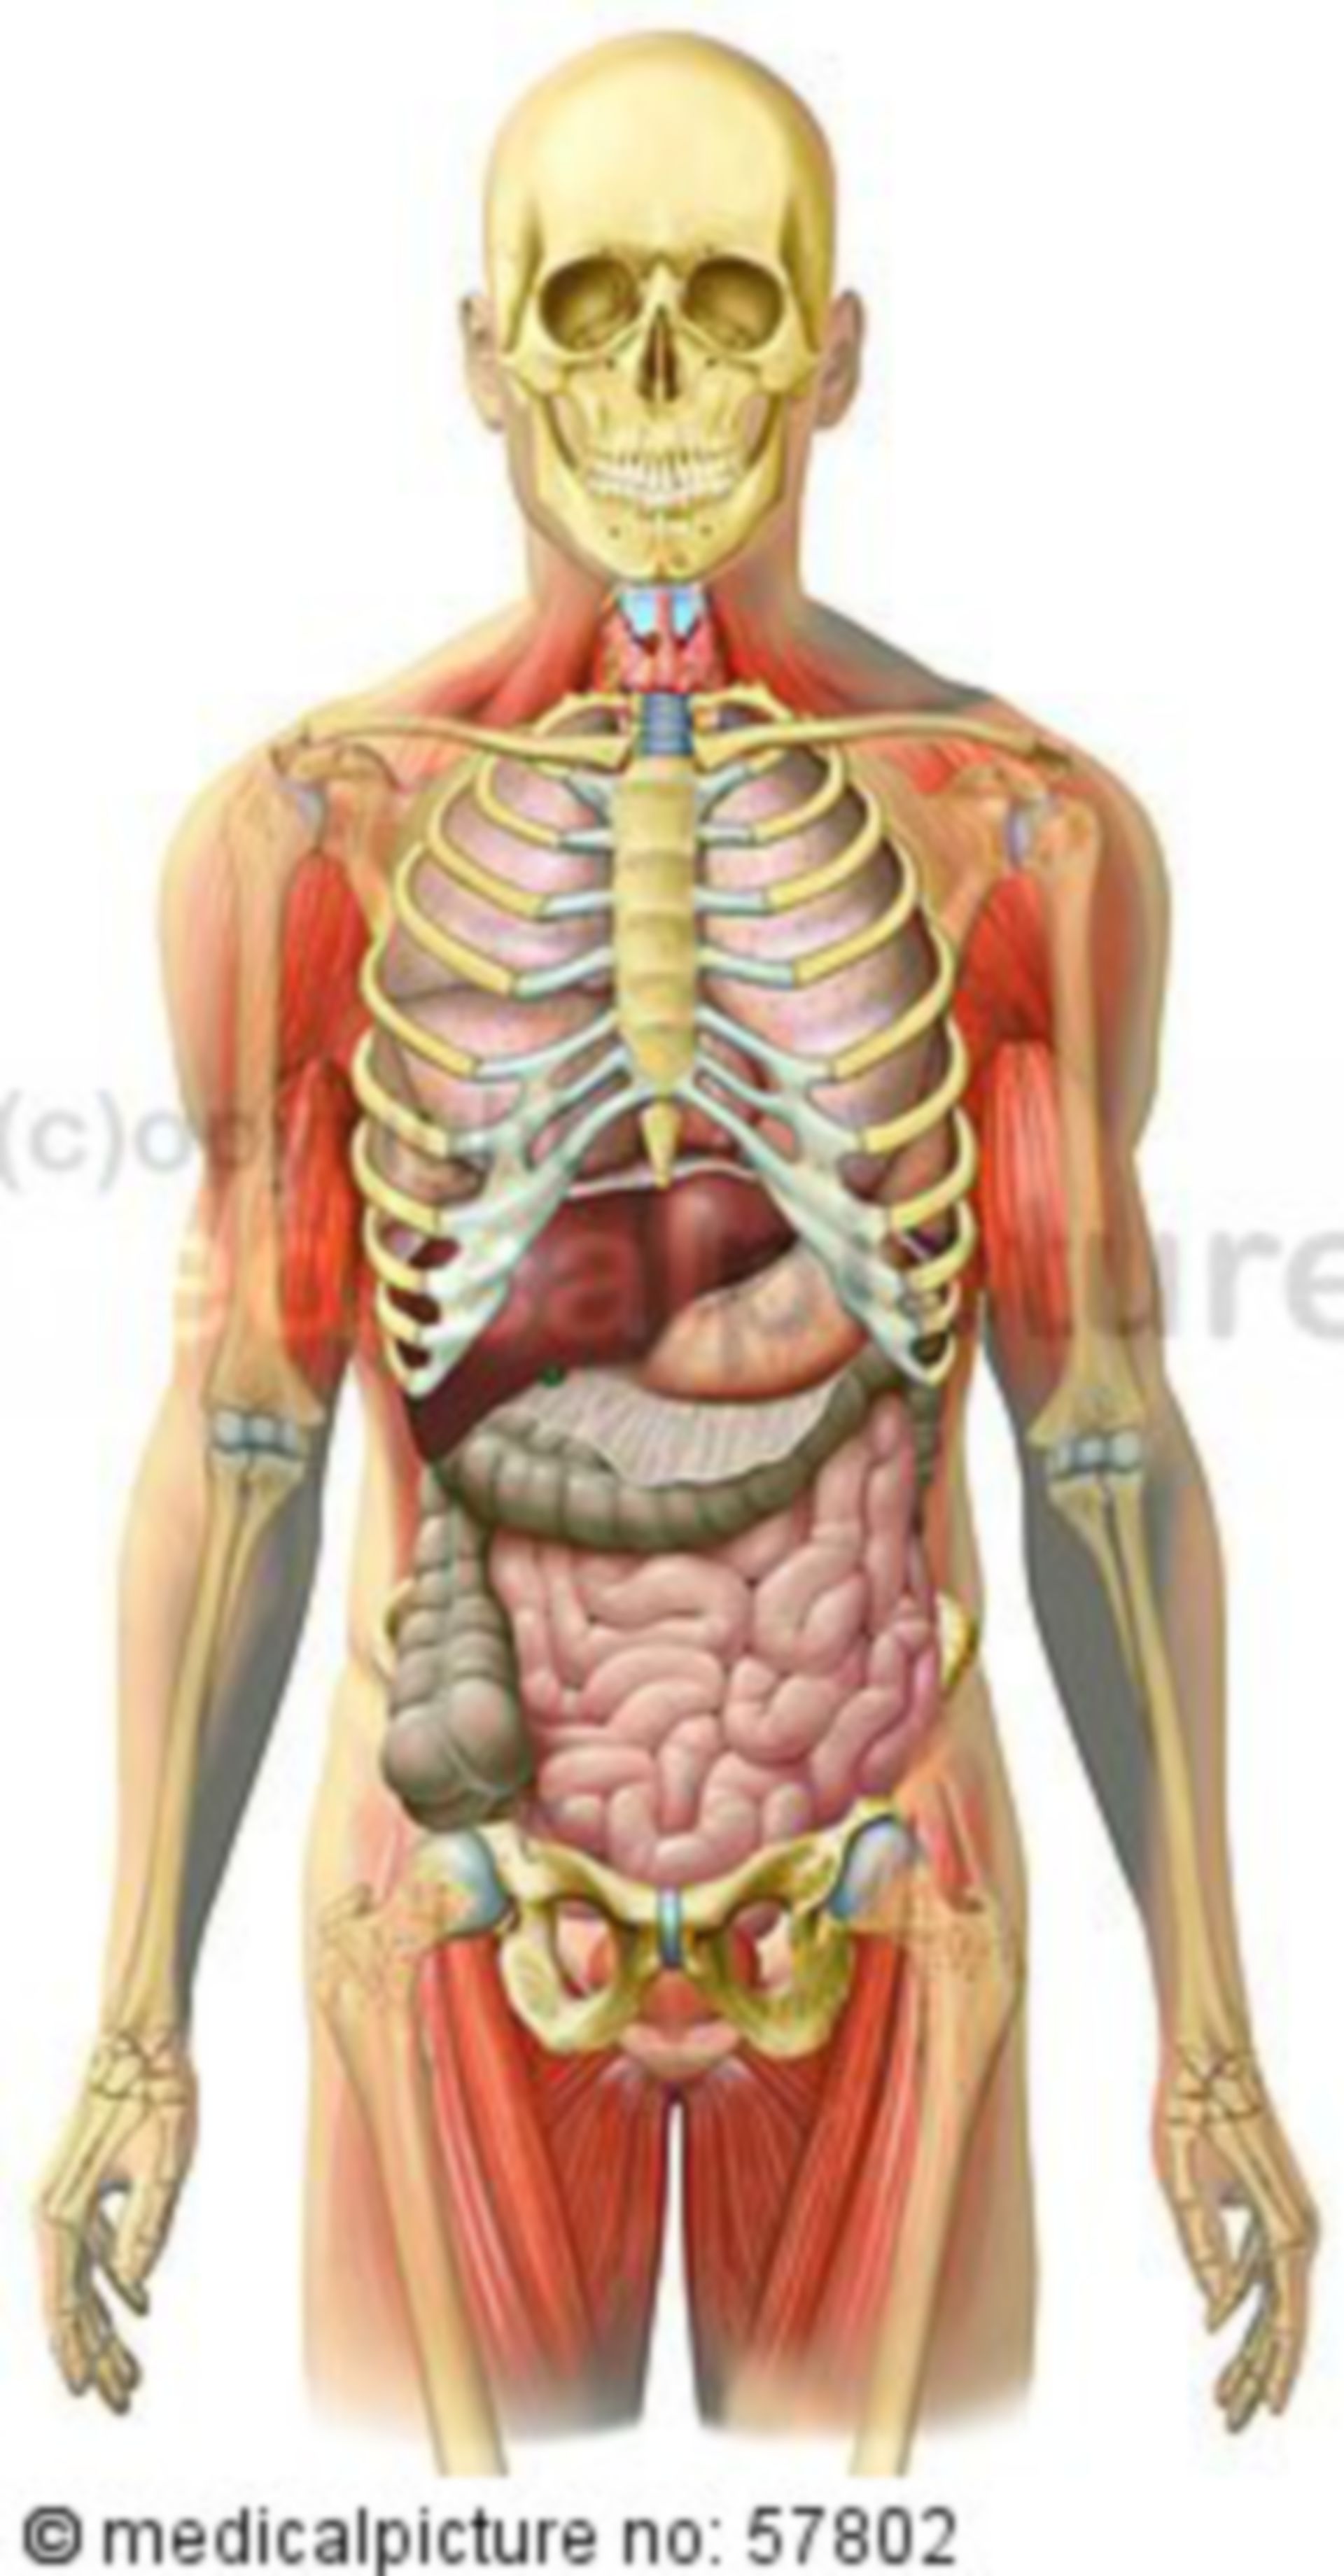  Anatomische Illustrationen - Skelett mit Brust-, Bauch-, Beckeneingeweide und Skelettmuskulatur 
